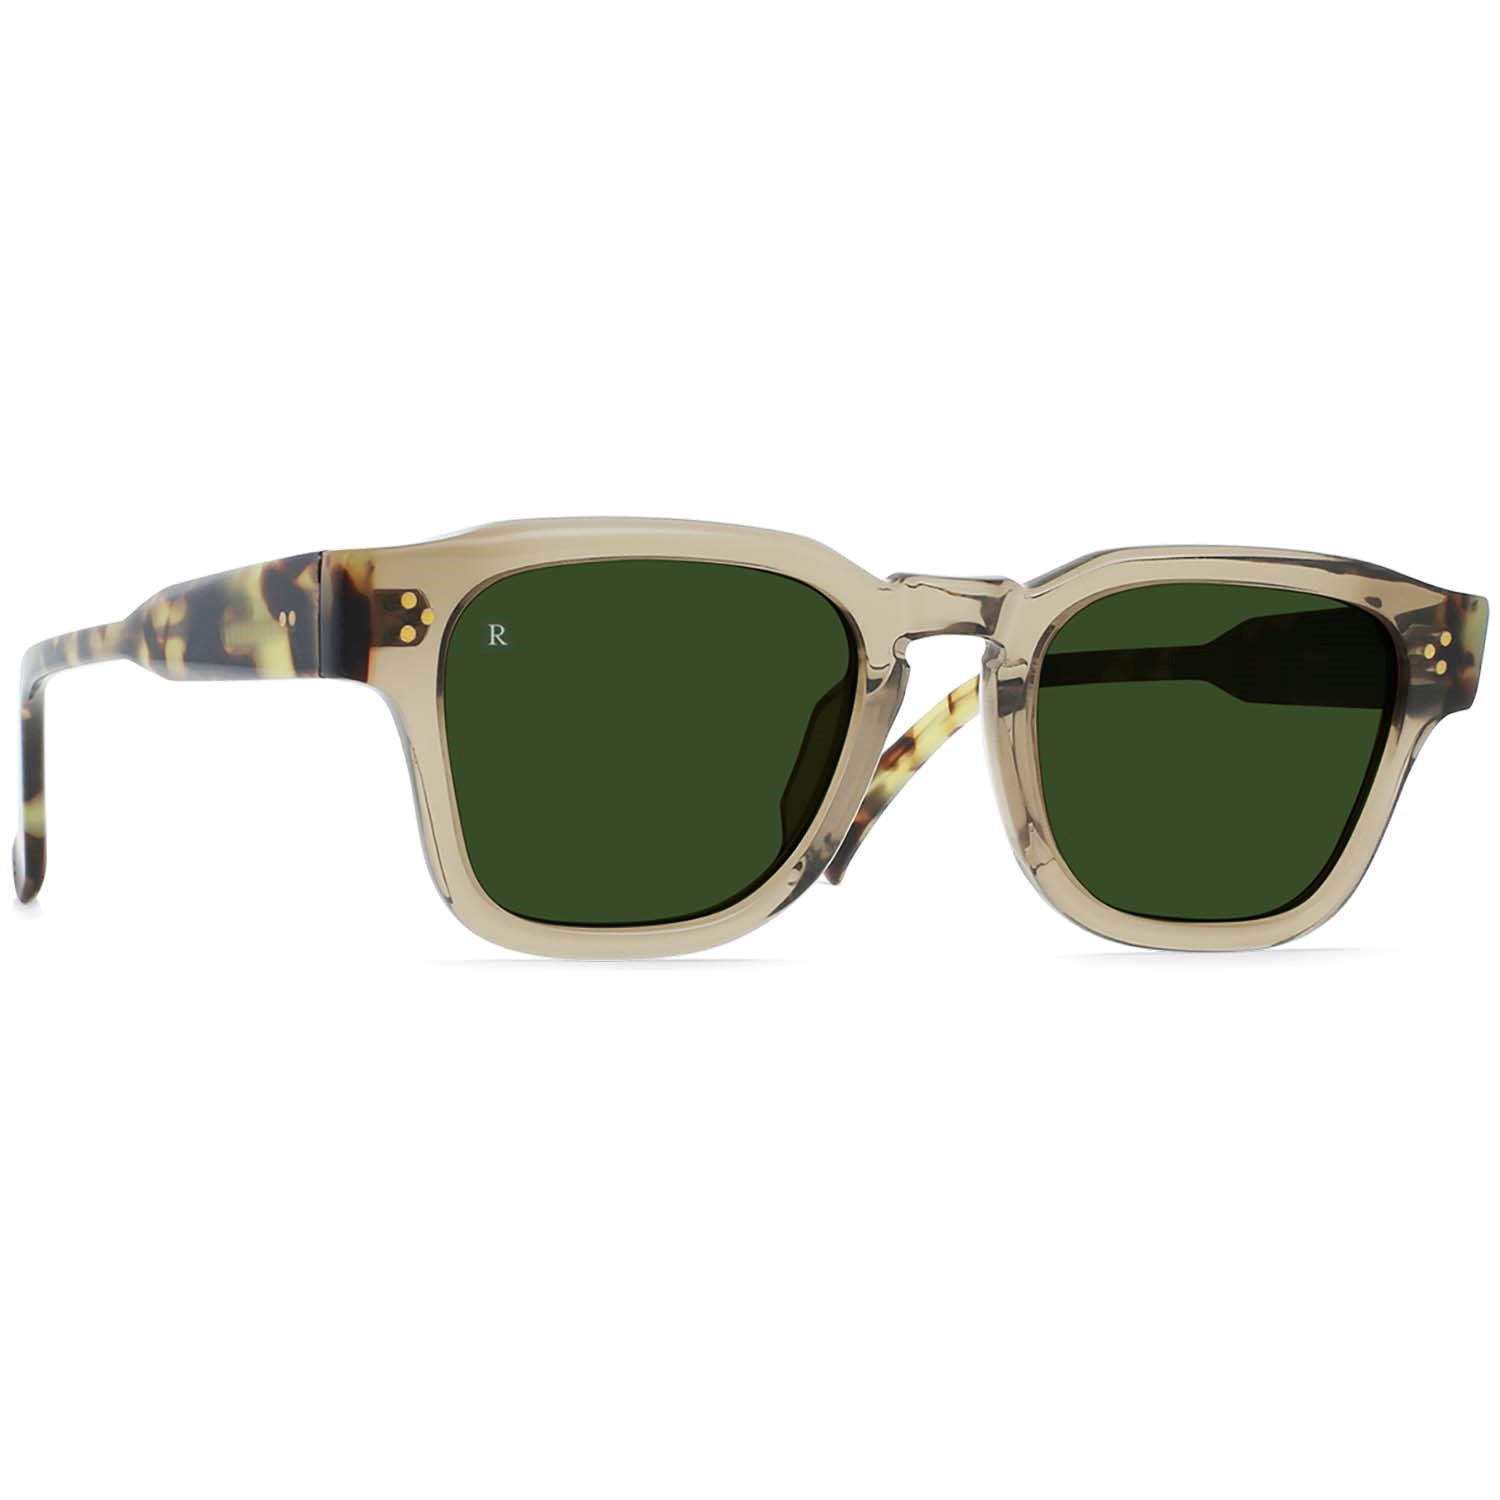 Солнцезащитные очки RAEN Rece, бежевый/зеленый